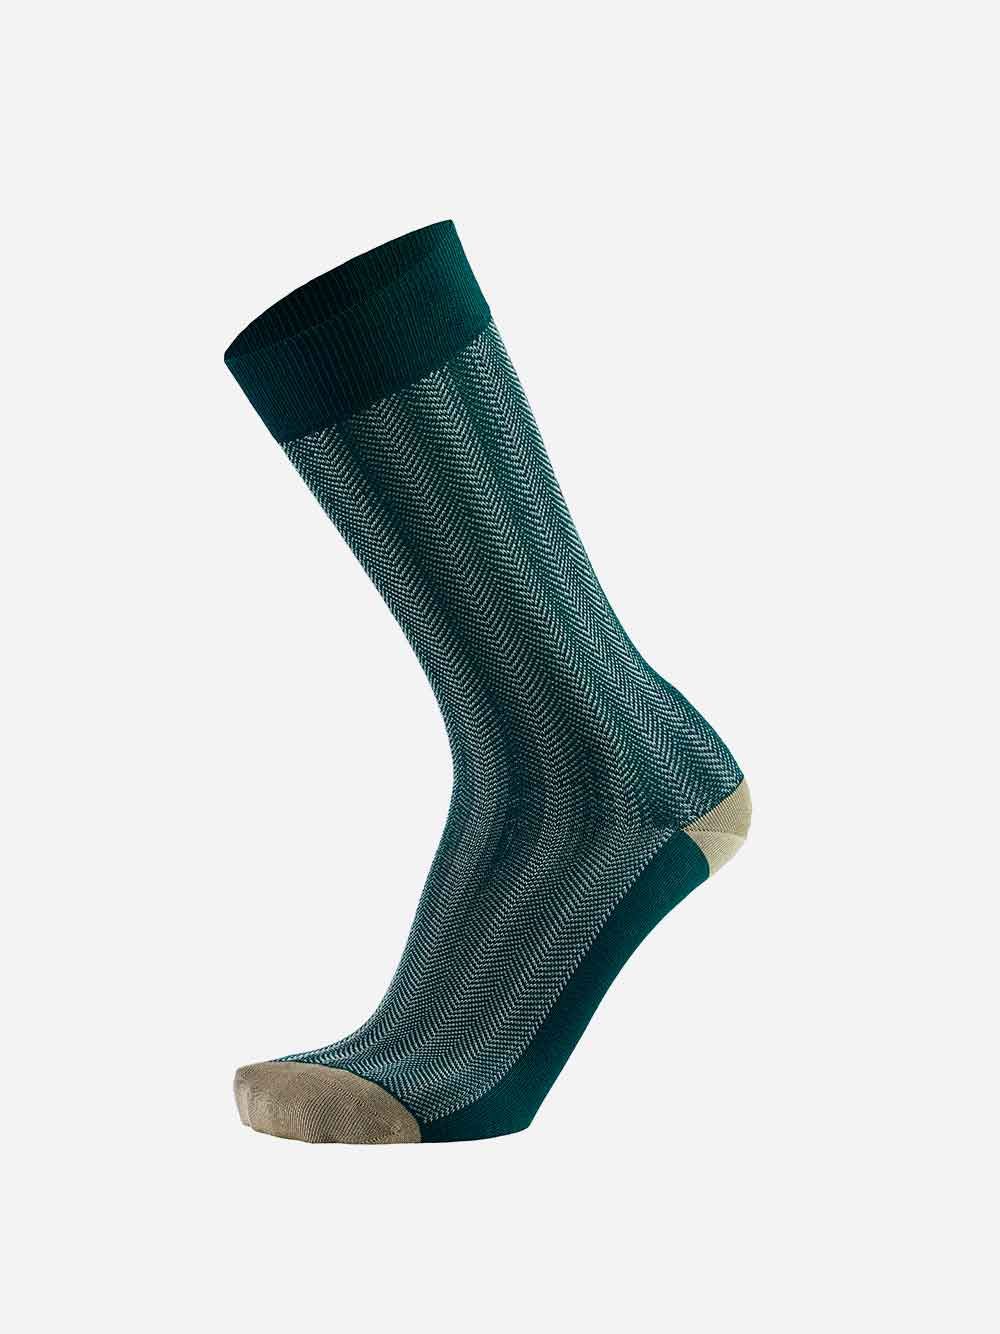 Spines Green Socks | Westmister